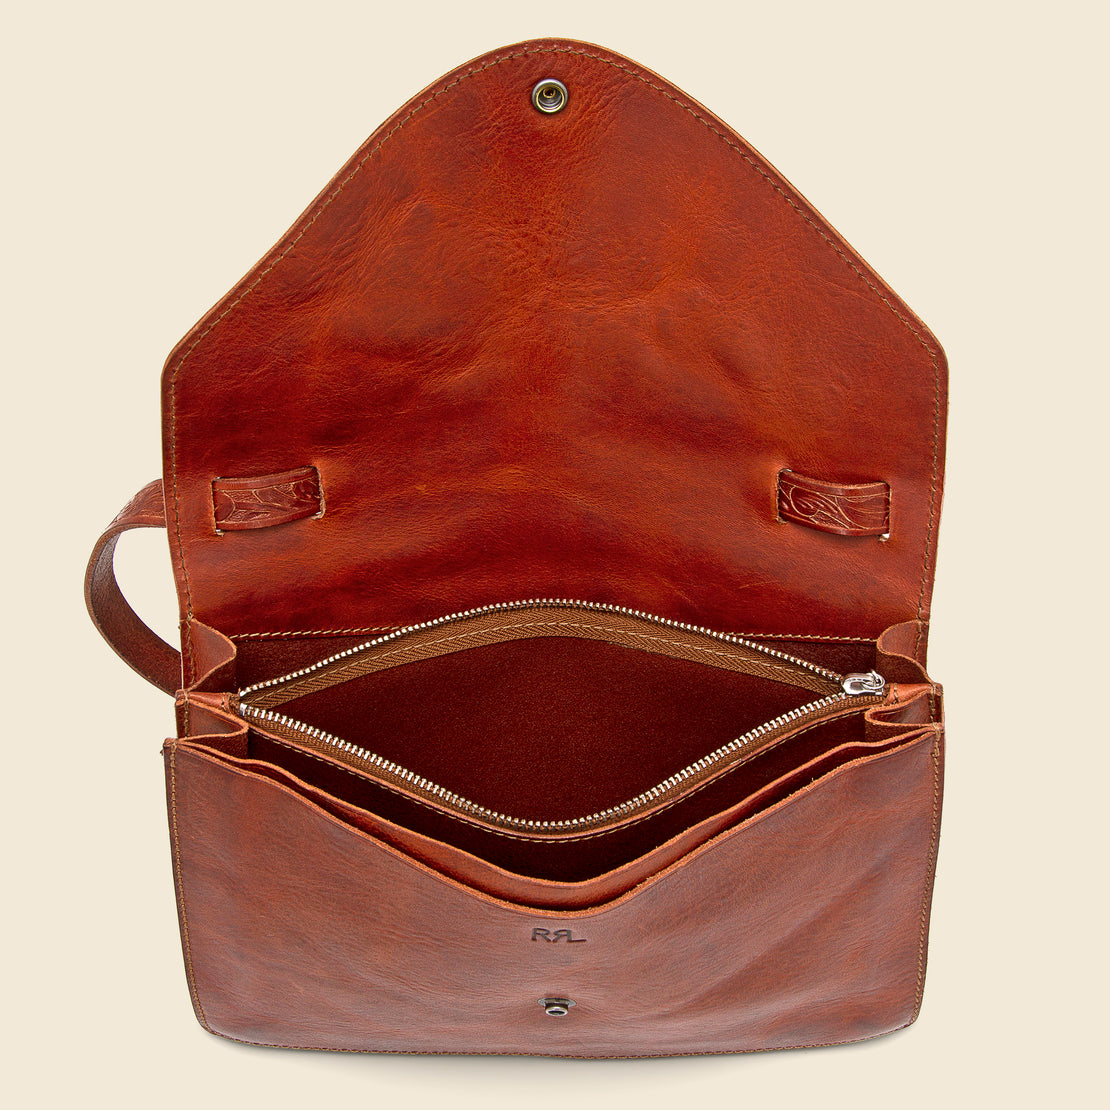 Concha Envelope Embossed Leather Handbag - Dark Brown